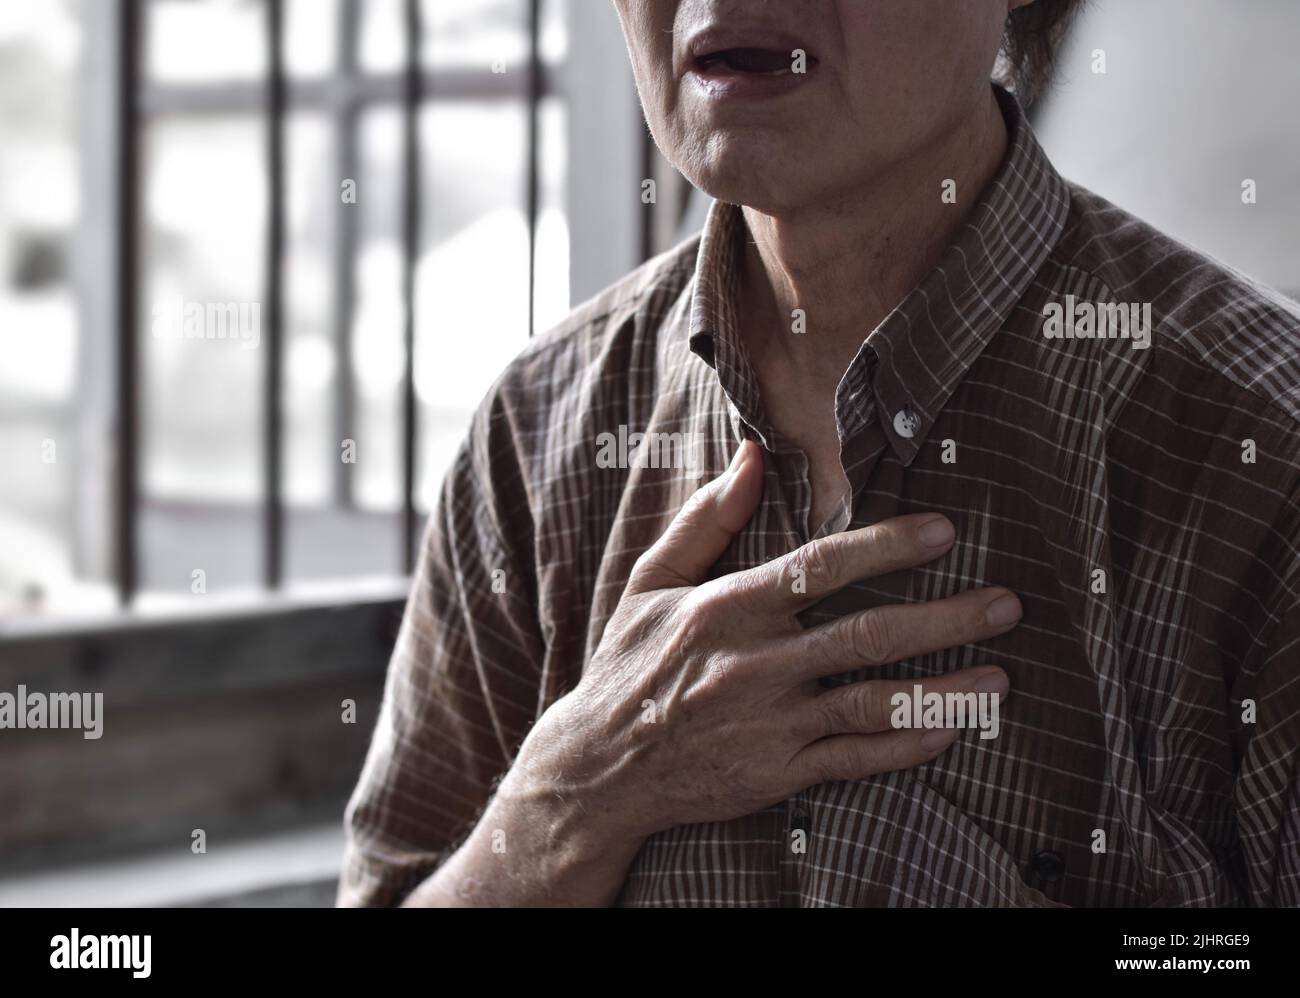 L'anziano asiatico soffre di senso di costrizione toracica. Può essere causato da asma, bronchite, bronchiolite, polmonite, infarto miocardico, h ischemica Foto Stock